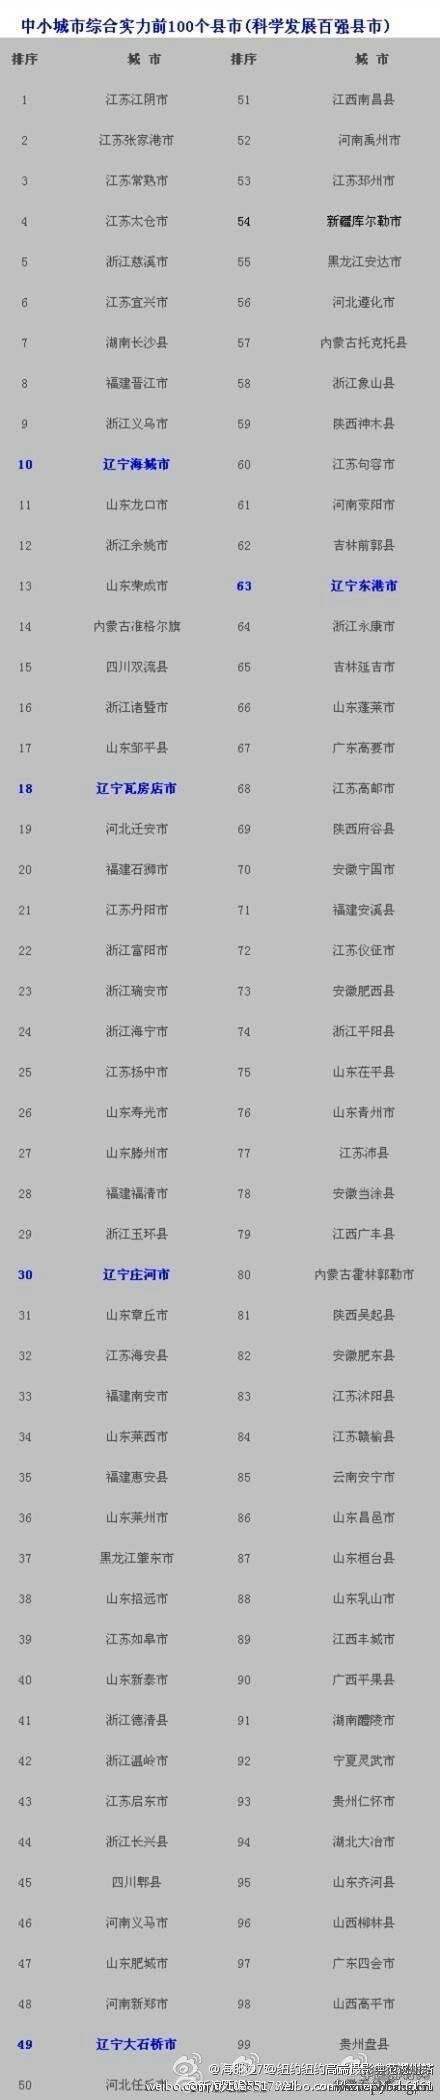 2014中国科学发展百强县排行榜